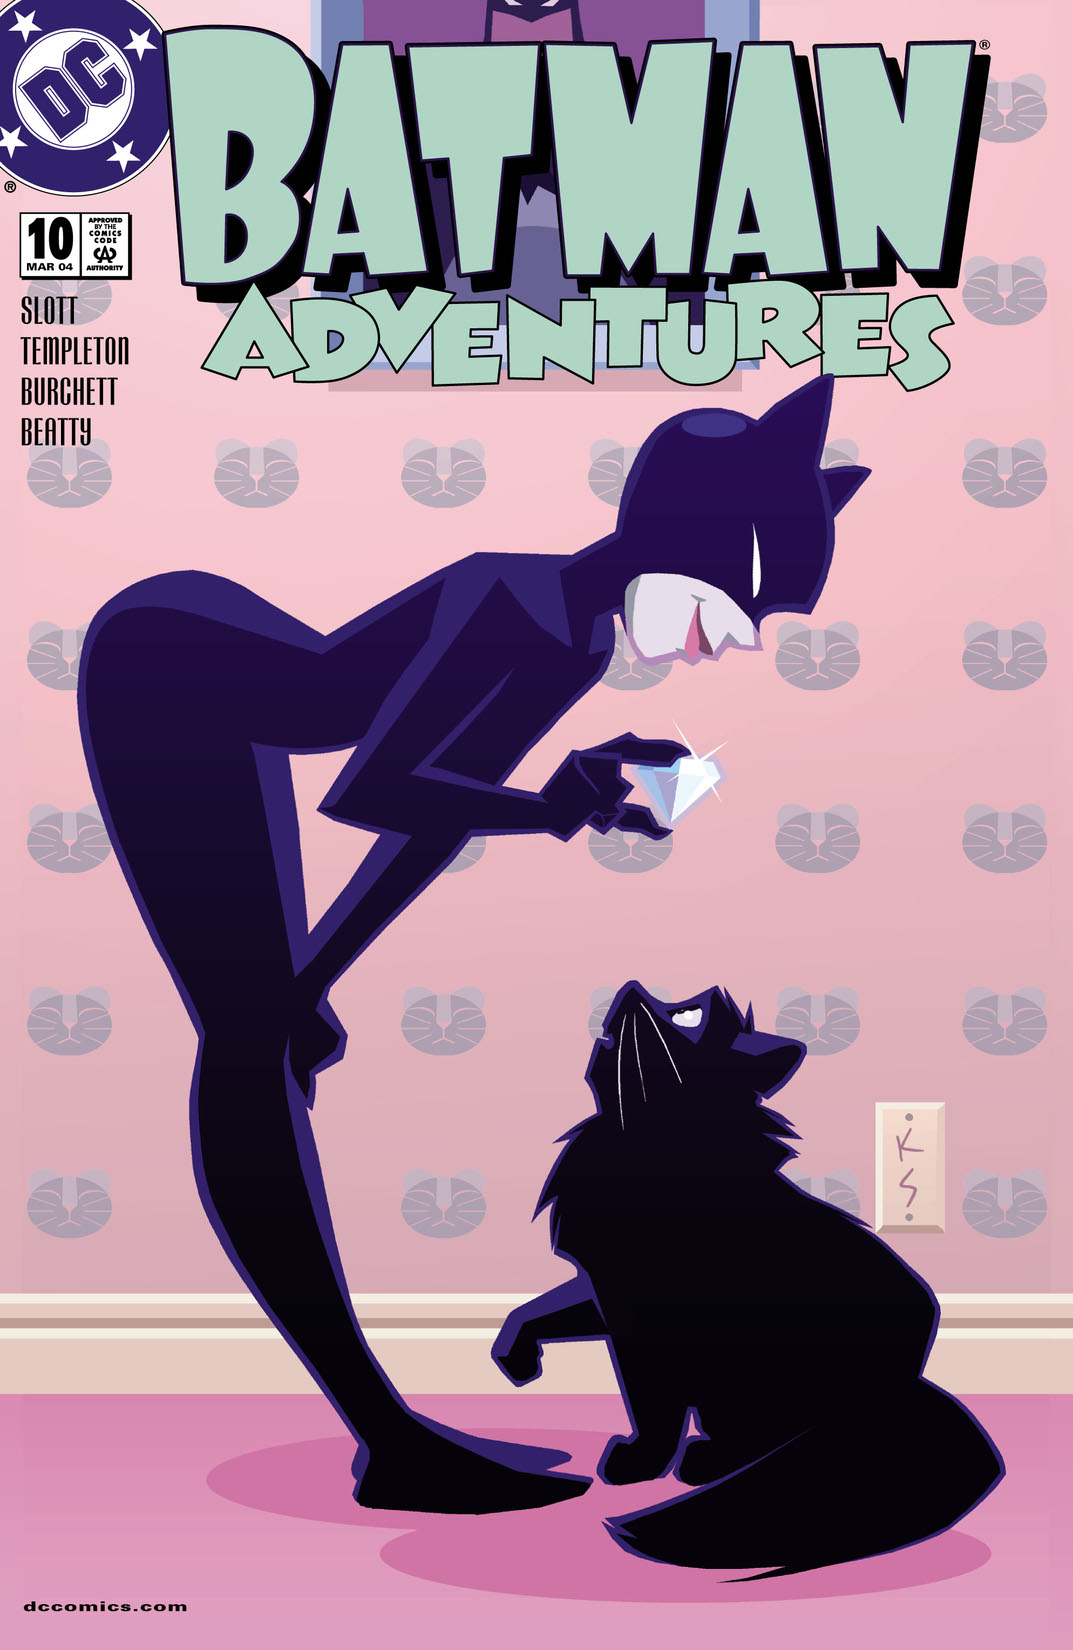 Batman Adventures #10 preview images